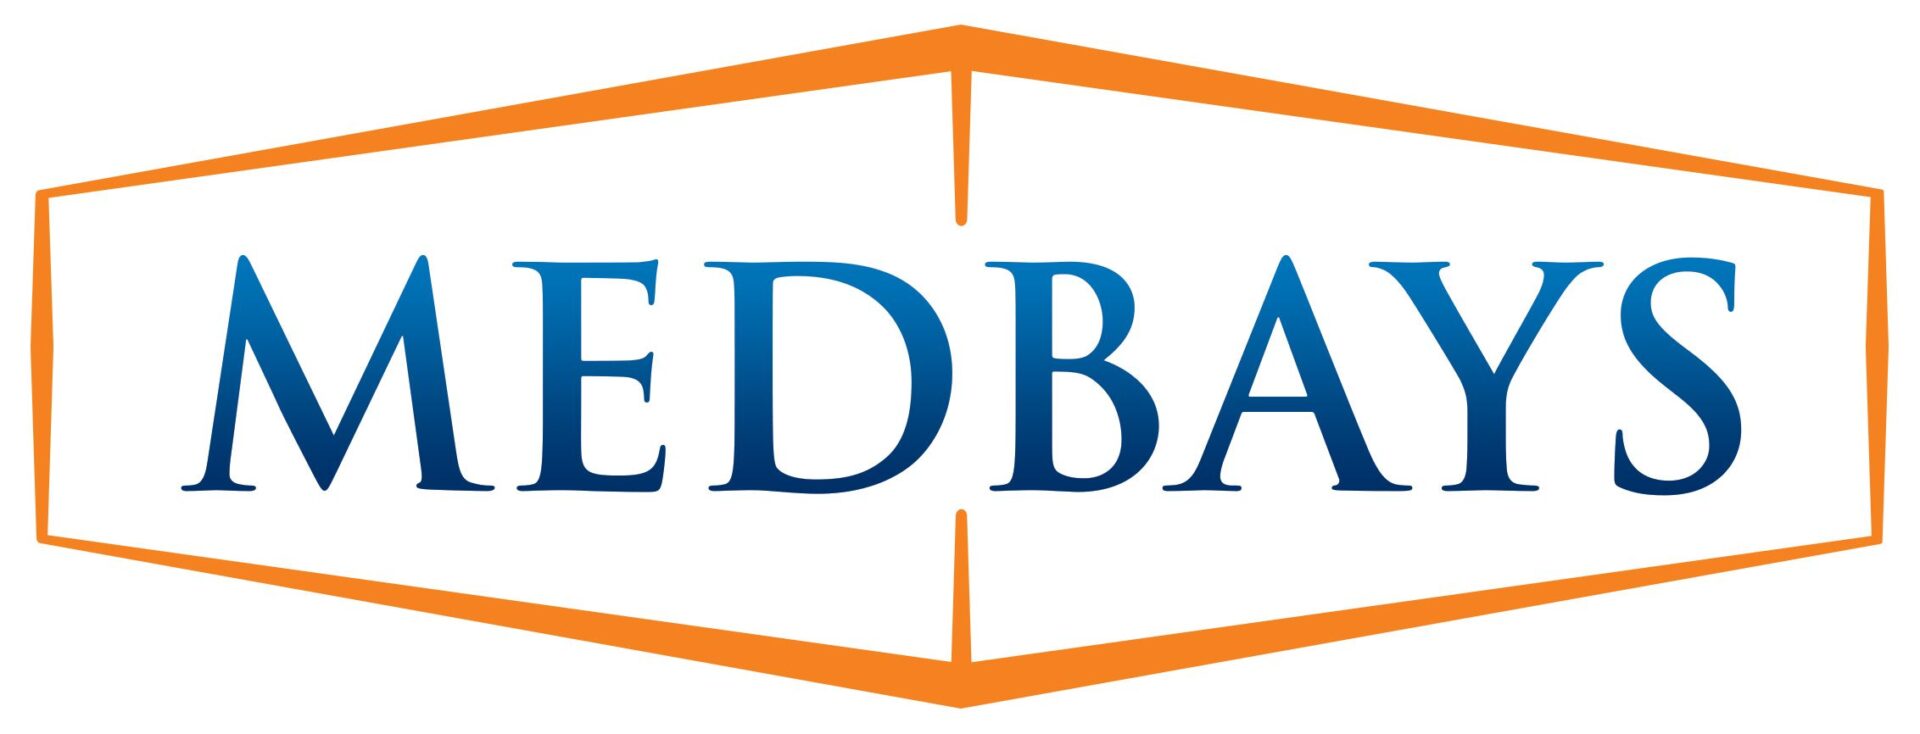 A logo of fedbar is shown.